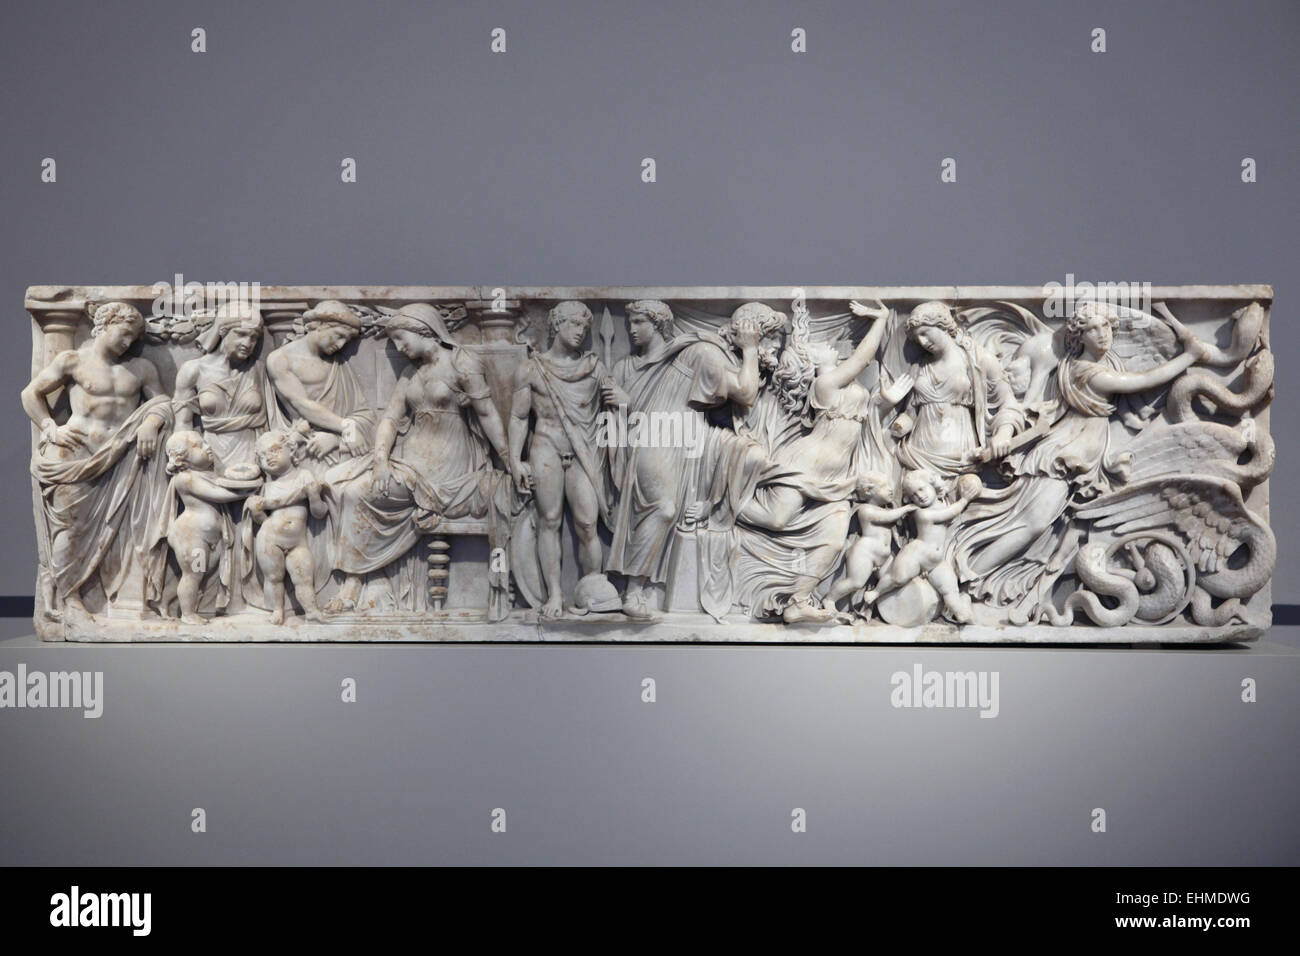 Medea-Sarkophag. Römischer Marmor-Sarkophag von 140-150 n. Chr.. Altes Museum, Berlin, Deutschland. Der Sarkophag wurde in der Nähe von Porta San Lorenzo in Rom gefunden. Stockfoto